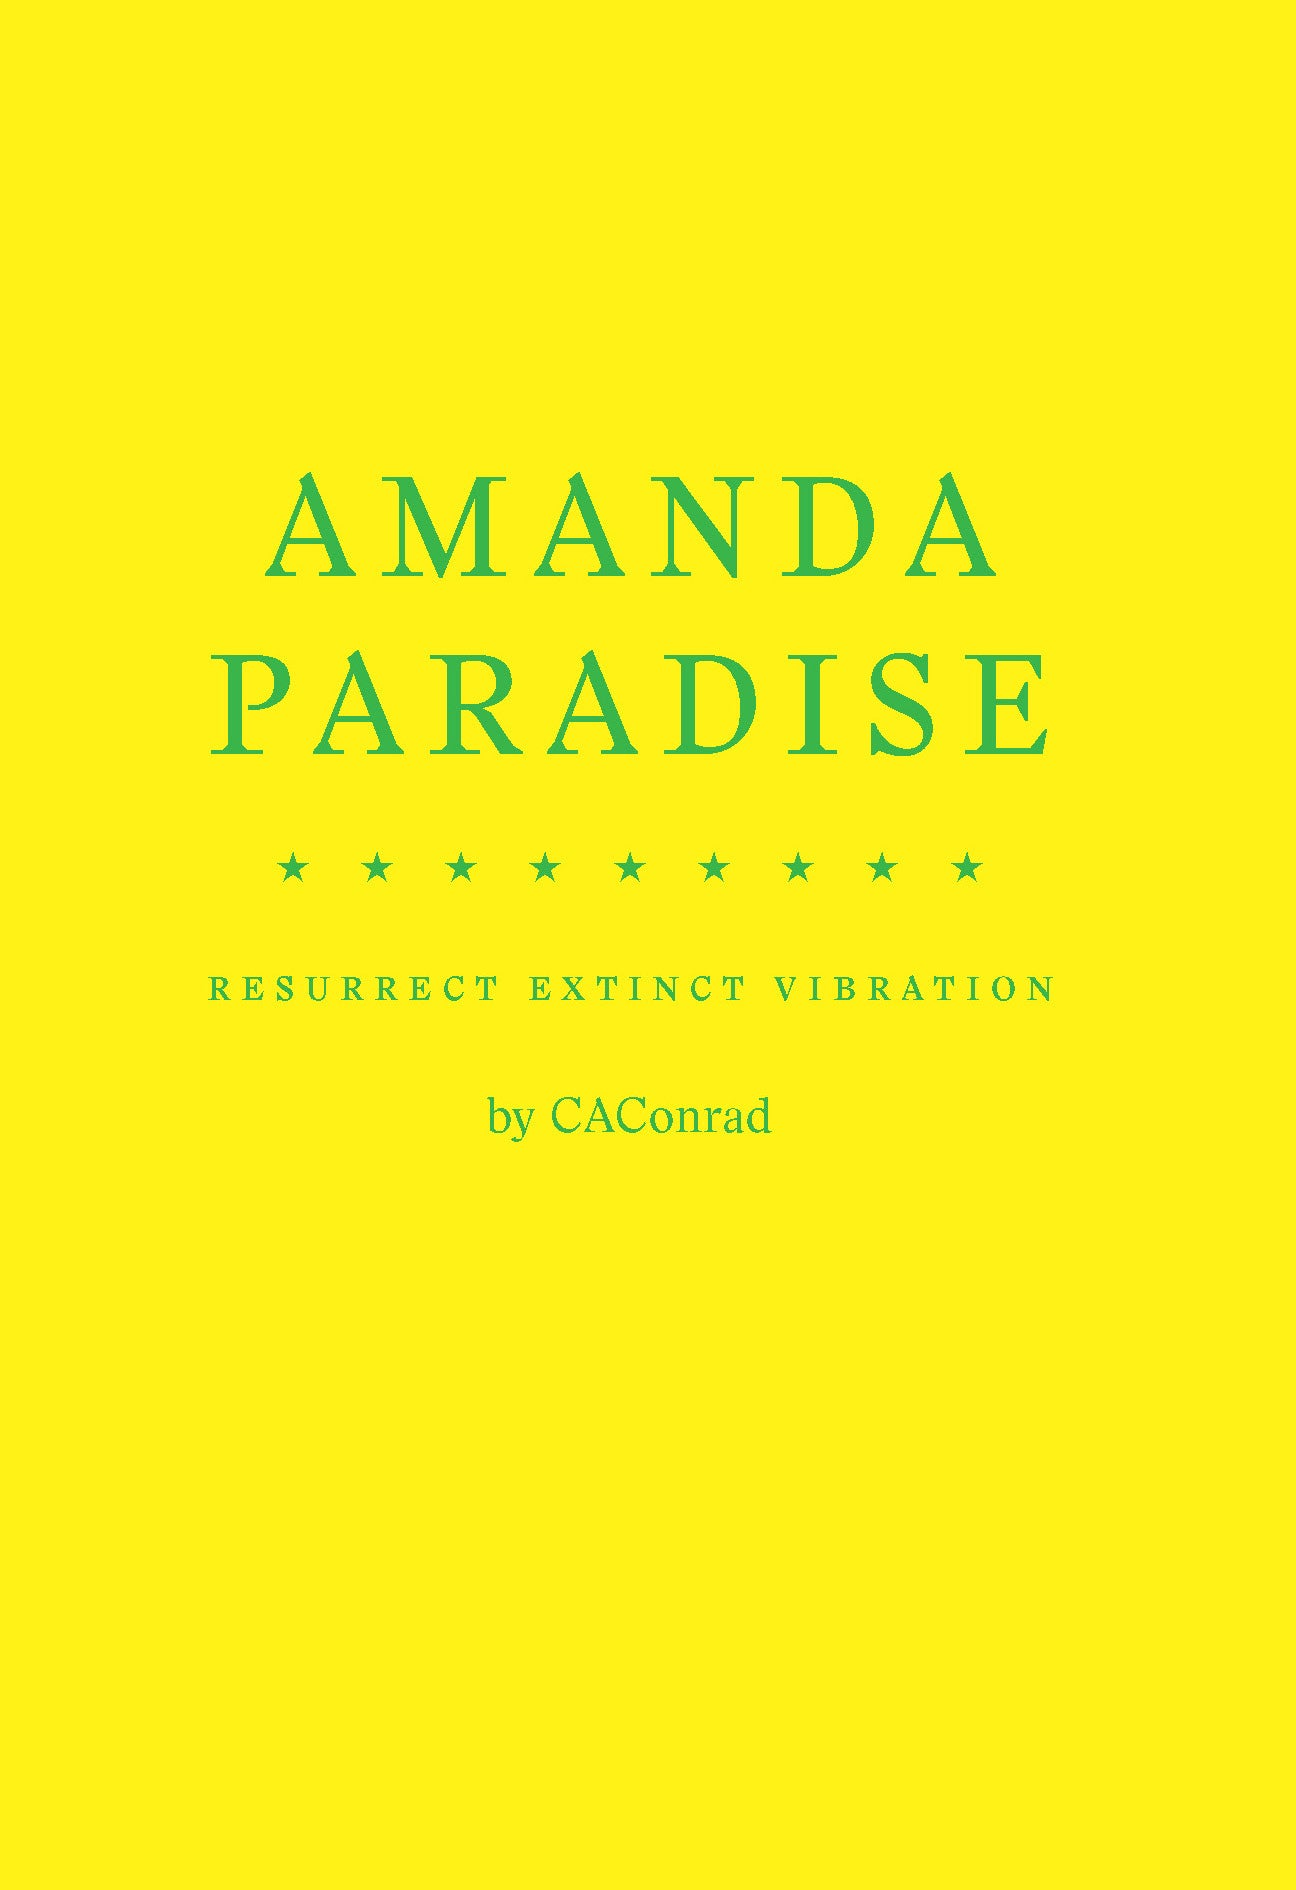 AMANDA PARADISE - limited edition hardcover